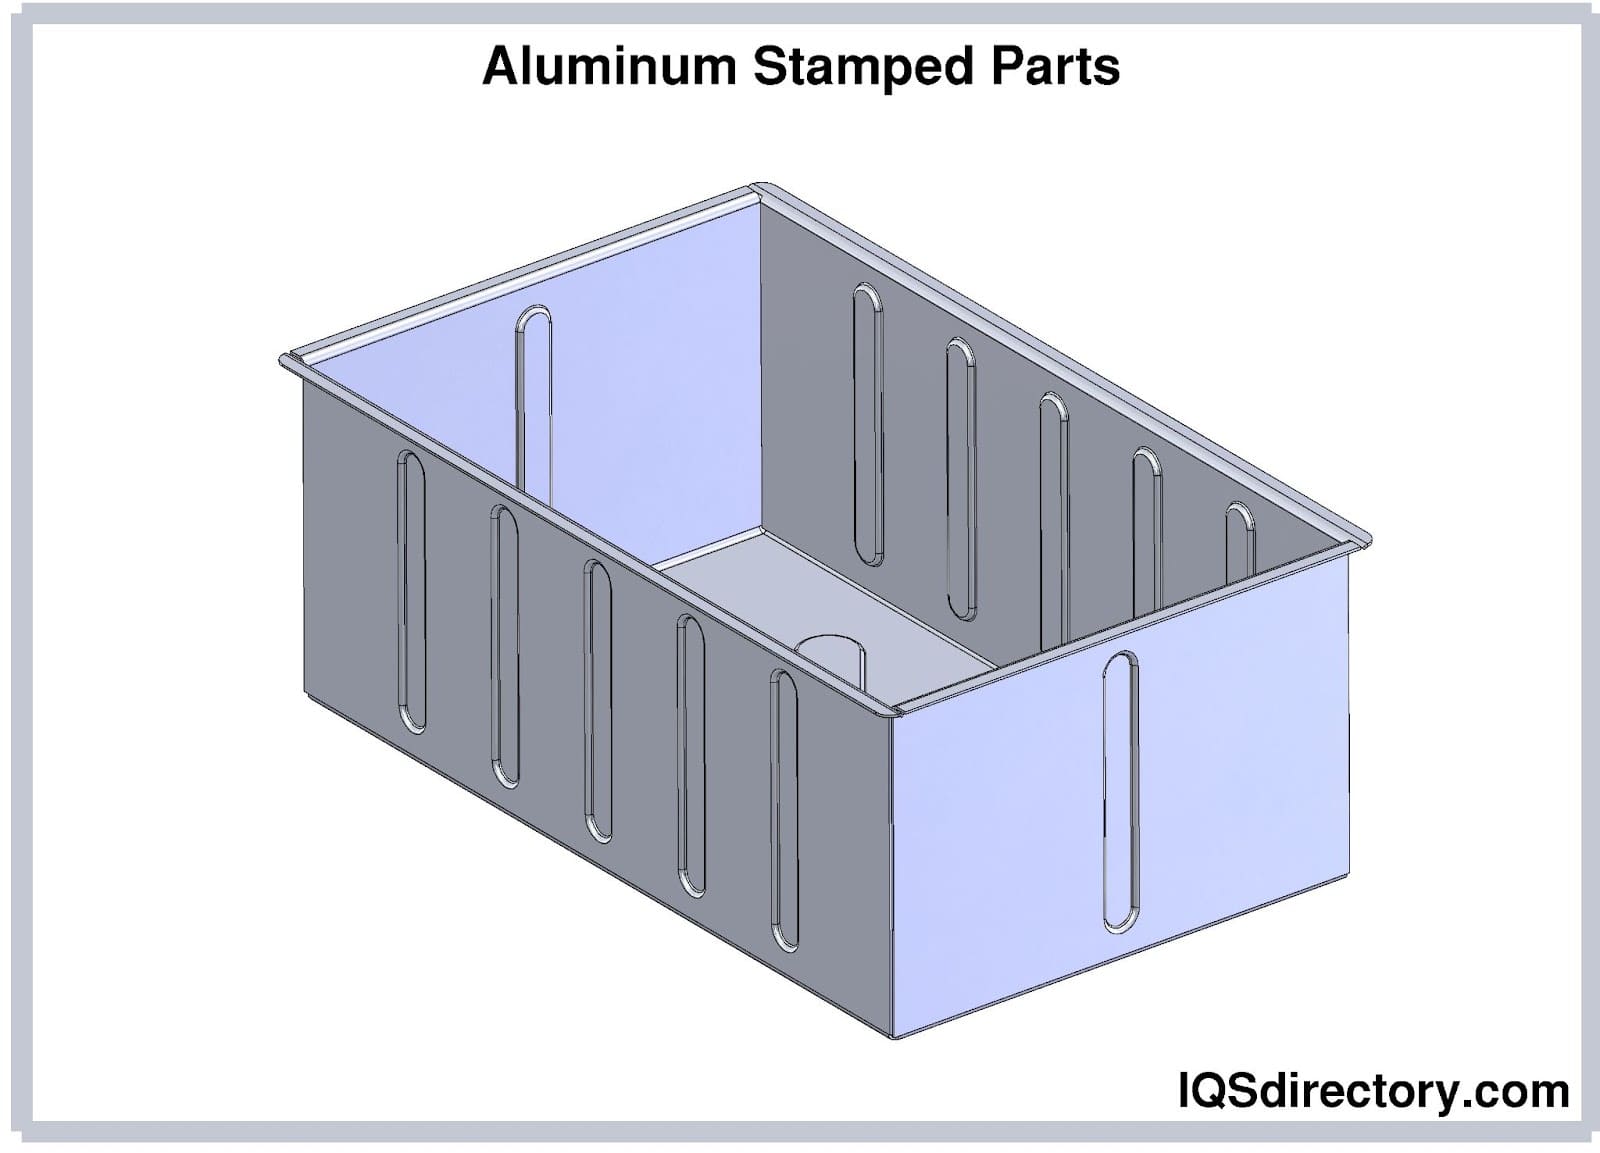 Aluminum Stamped Parts